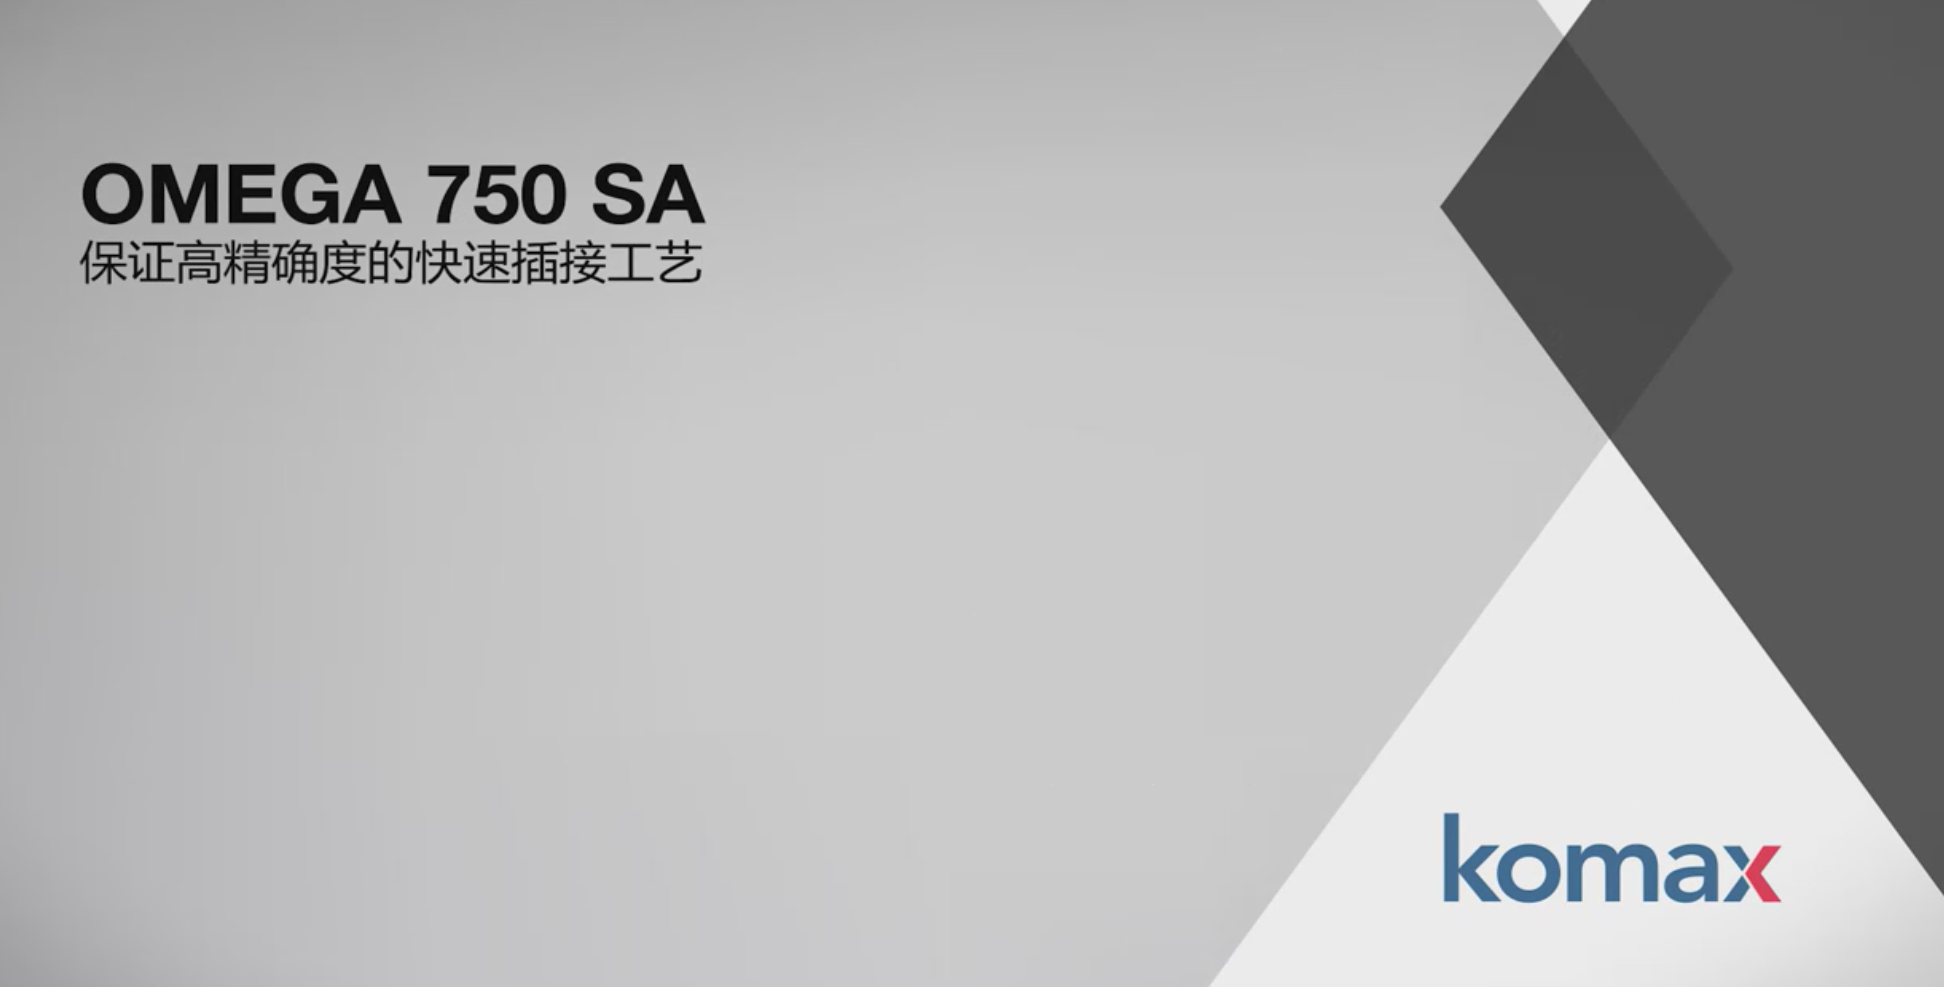 Omega 750 SA - 全自动线束加工针对NanoMQS, PicoMQS端子以及小线径导线0.13mm2/0.22mm2